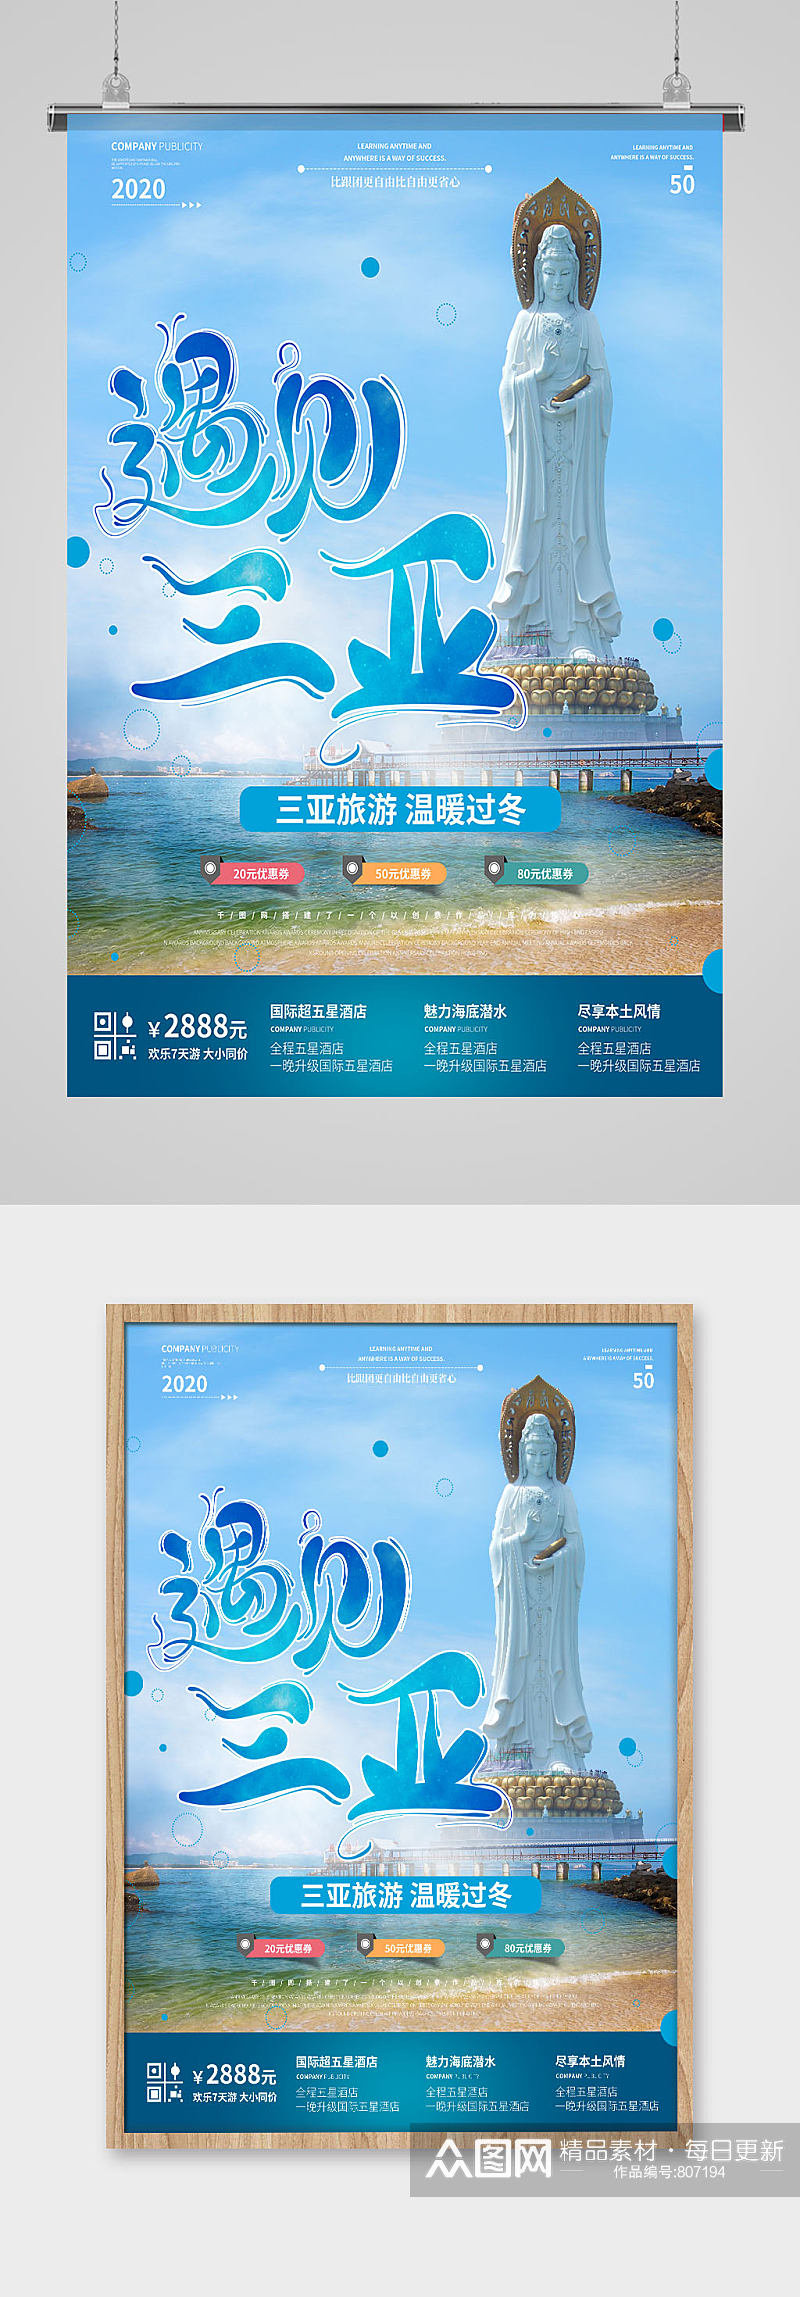 蓝色三亚旅游宣传挂图素材